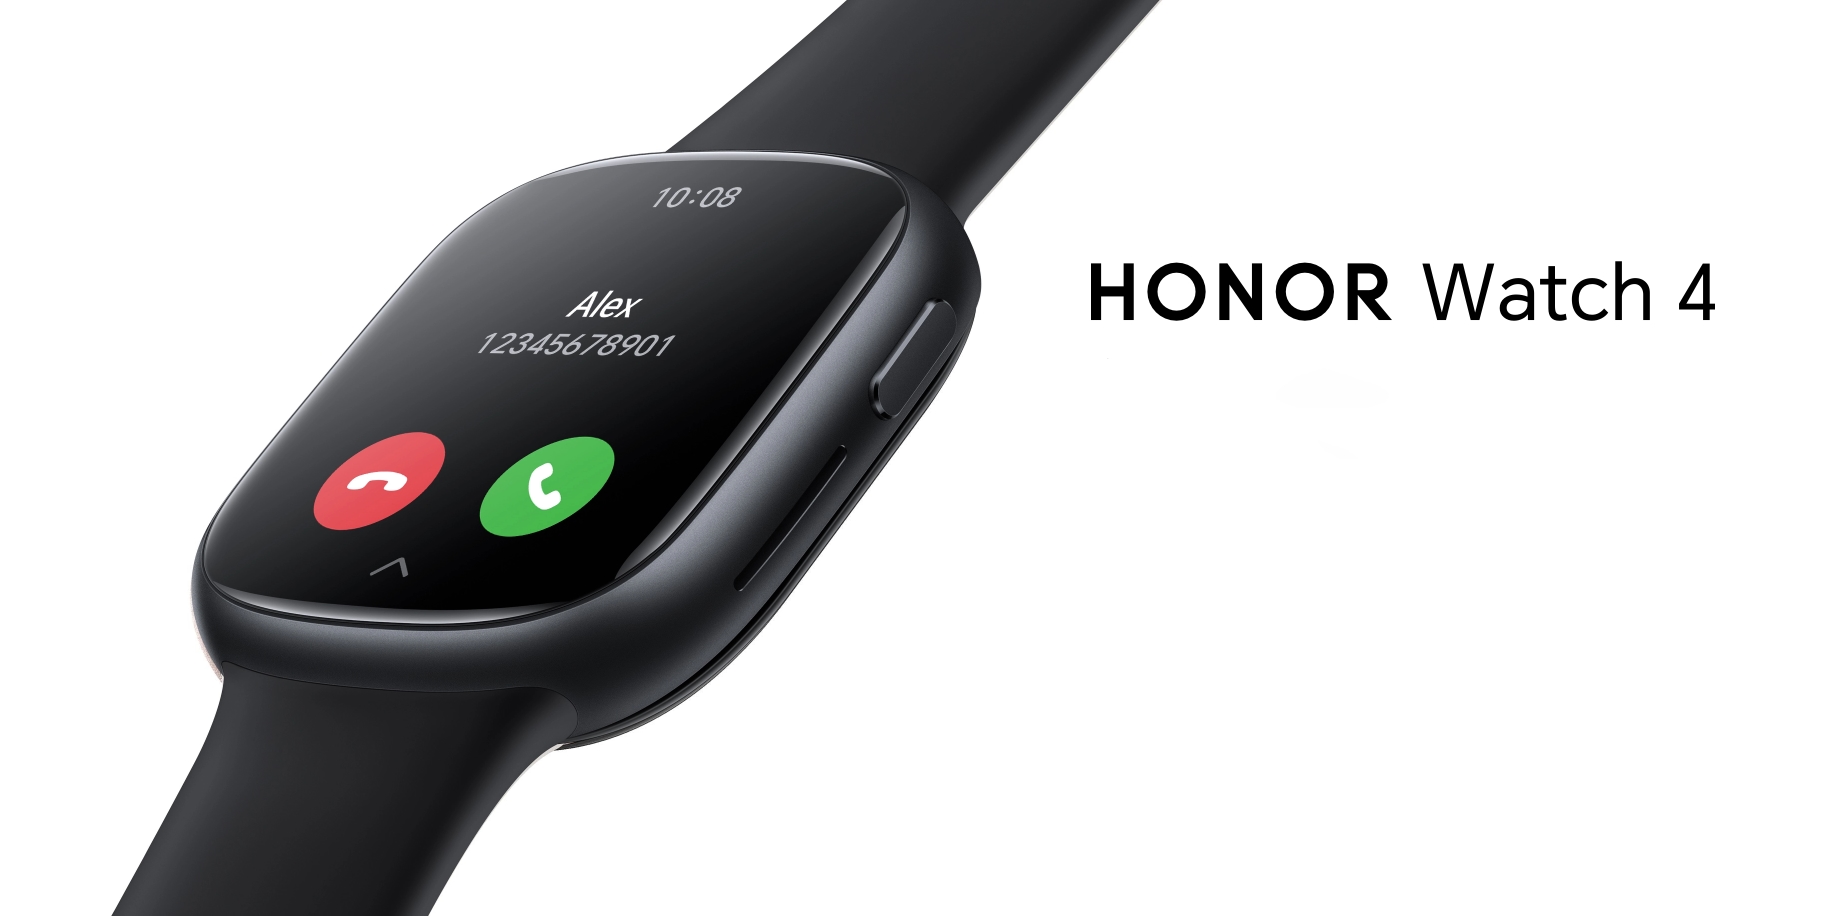 Honor Watch 4 med AMOLED-skärm, GPS och upp till 14 dagars batteritid har premiärvisats i Europa